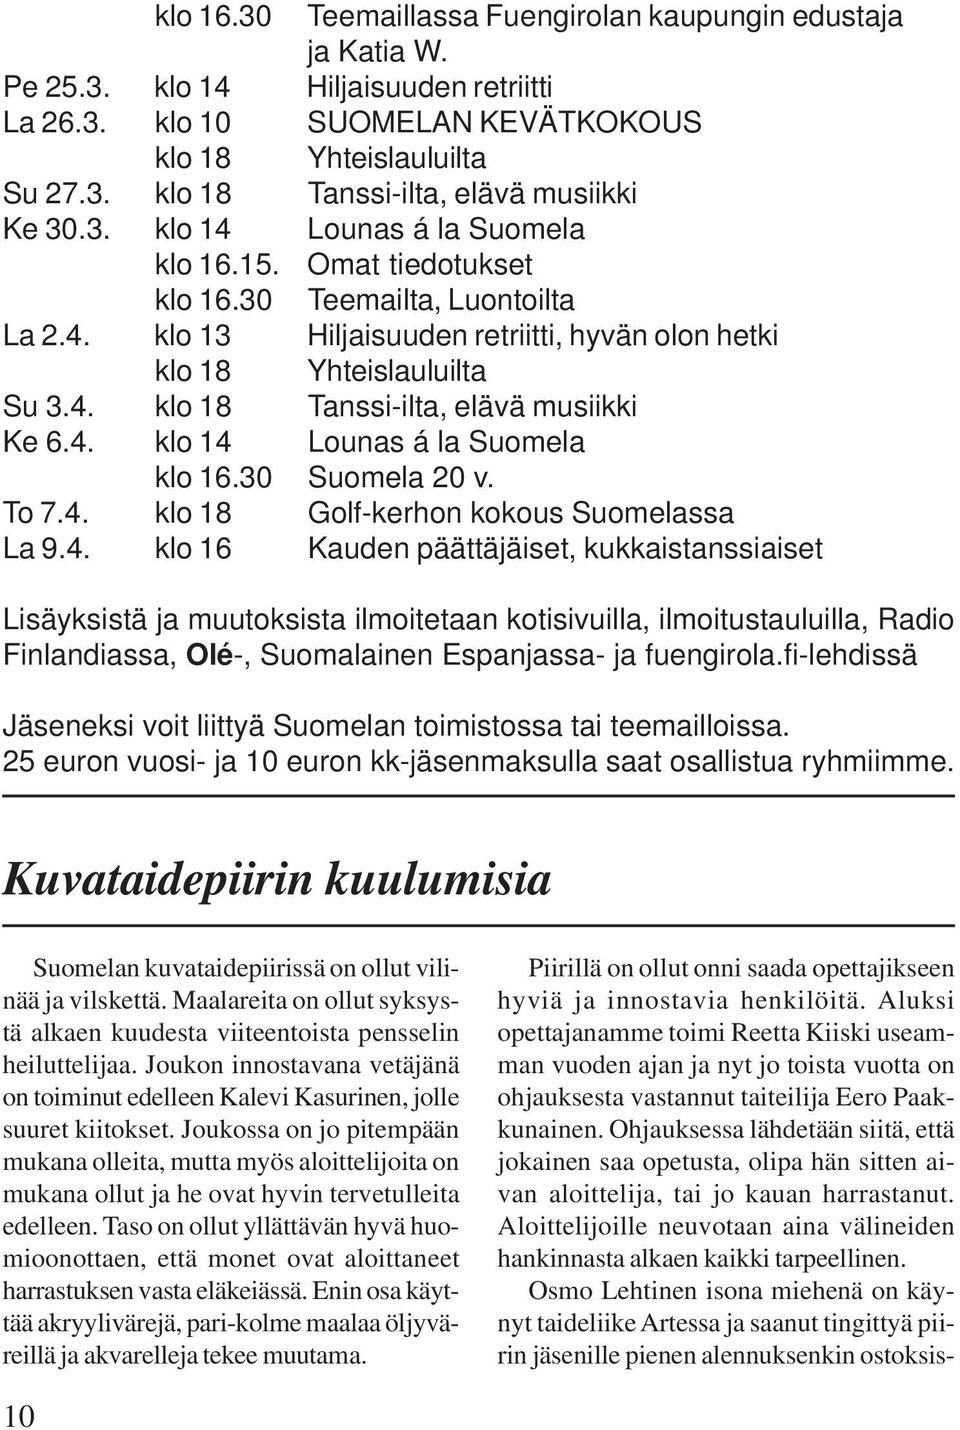 4. klo 14 Lounas á la Suomela klo 16.30 Suomela 20 v. To 7.4. klo 18 Golf-kerhon kokous Suomelassa La 9.4. klo 16 Kauden päättäjäiset, kukkaistanssiaiset Lisäyksistä ja muutoksista ilmoitetaan kotisivuilla, ilmoitustauluilla, Radio Finlandiassa, Olé-, Suomalainen Espanjassa- ja fuengirola.